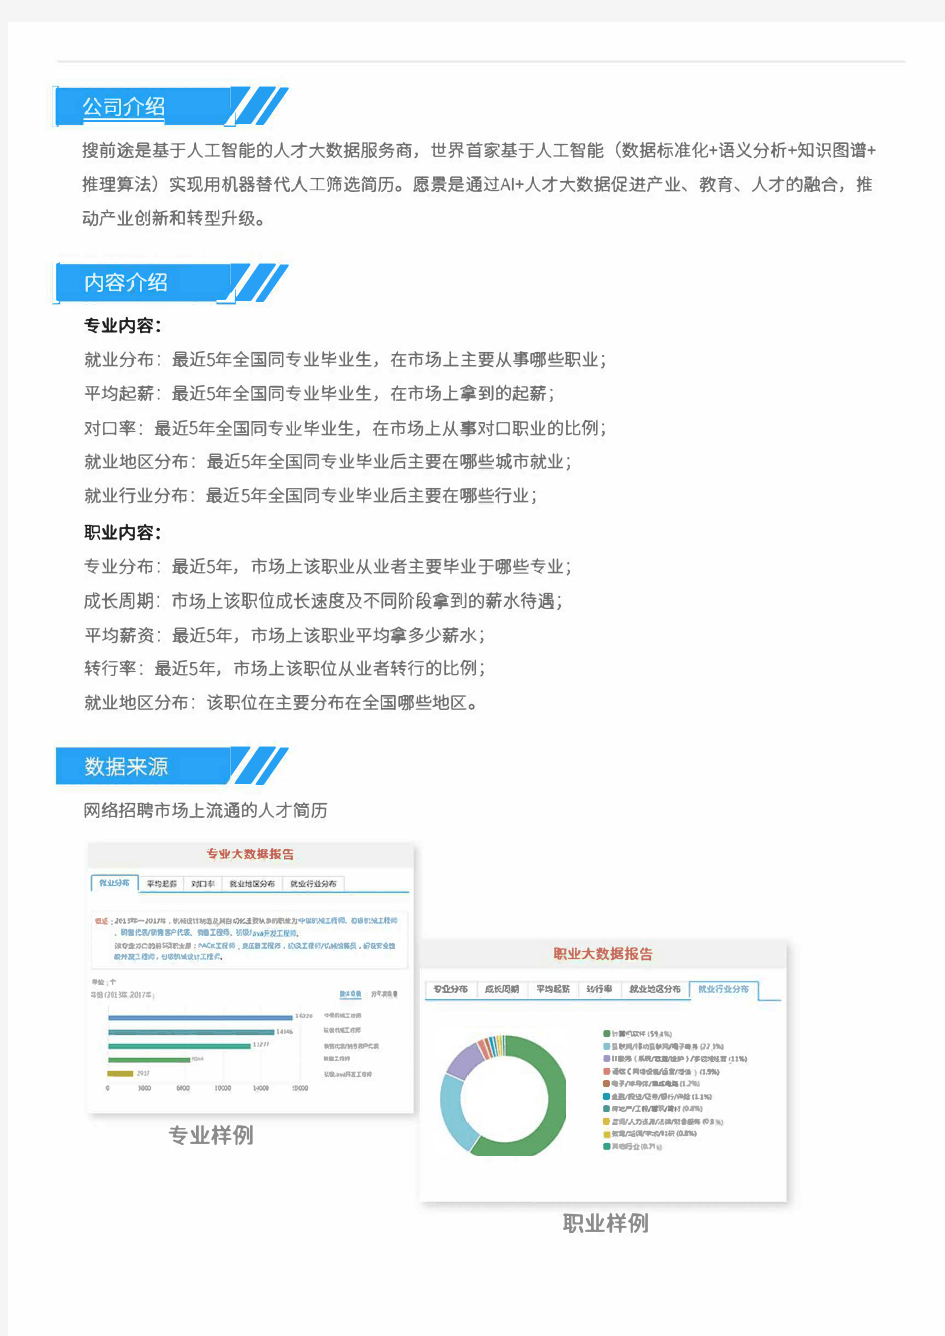 2013-2017年北京邮电大学数字媒体技术专业毕业生就业大数据报告